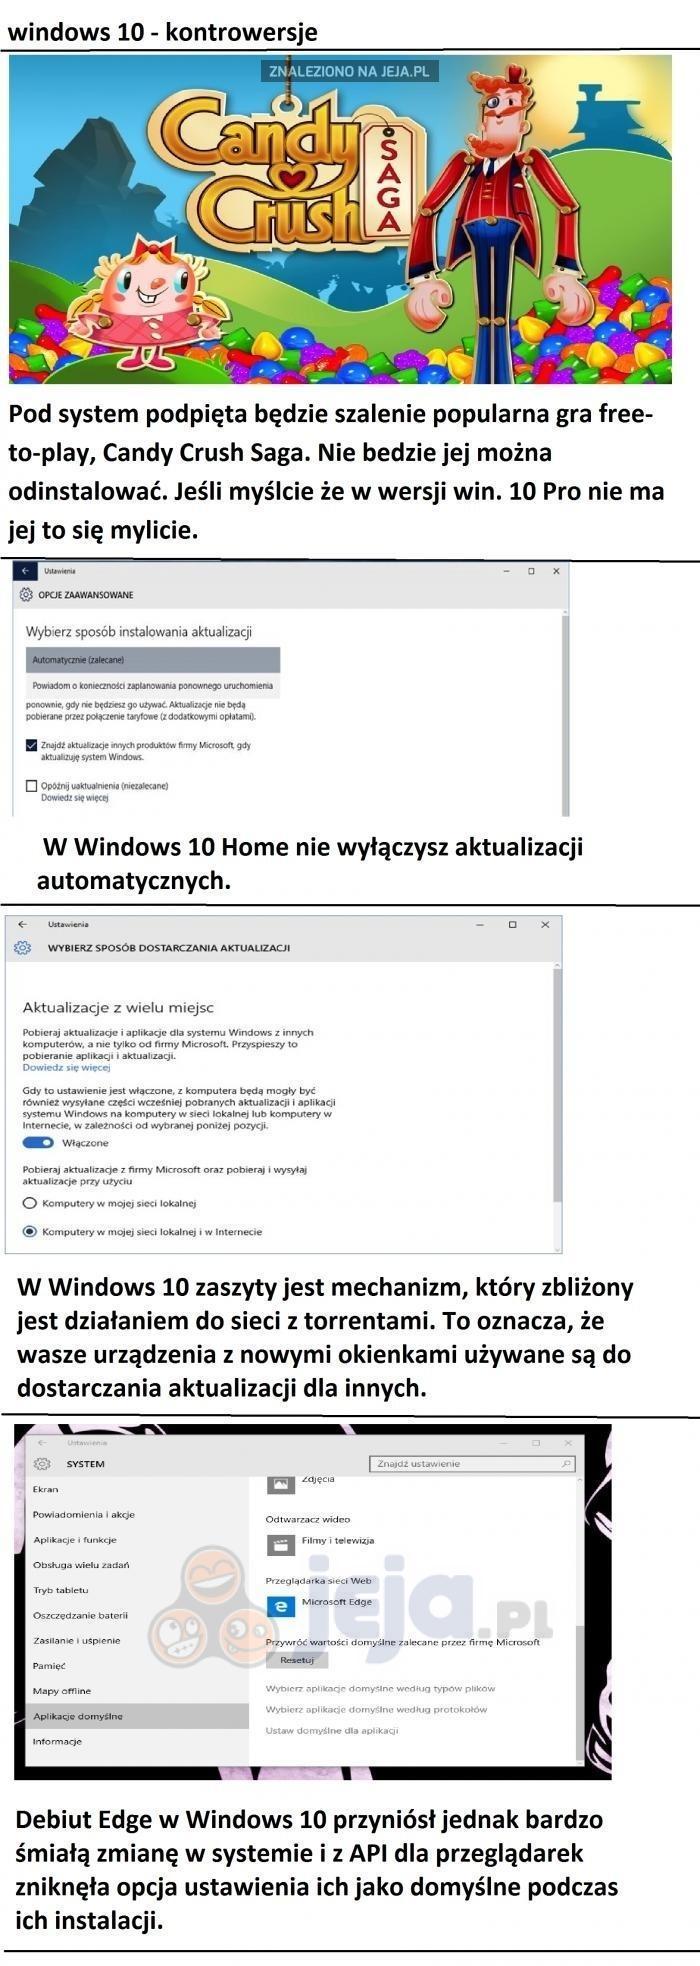 Kontrowersyjny Windows 10